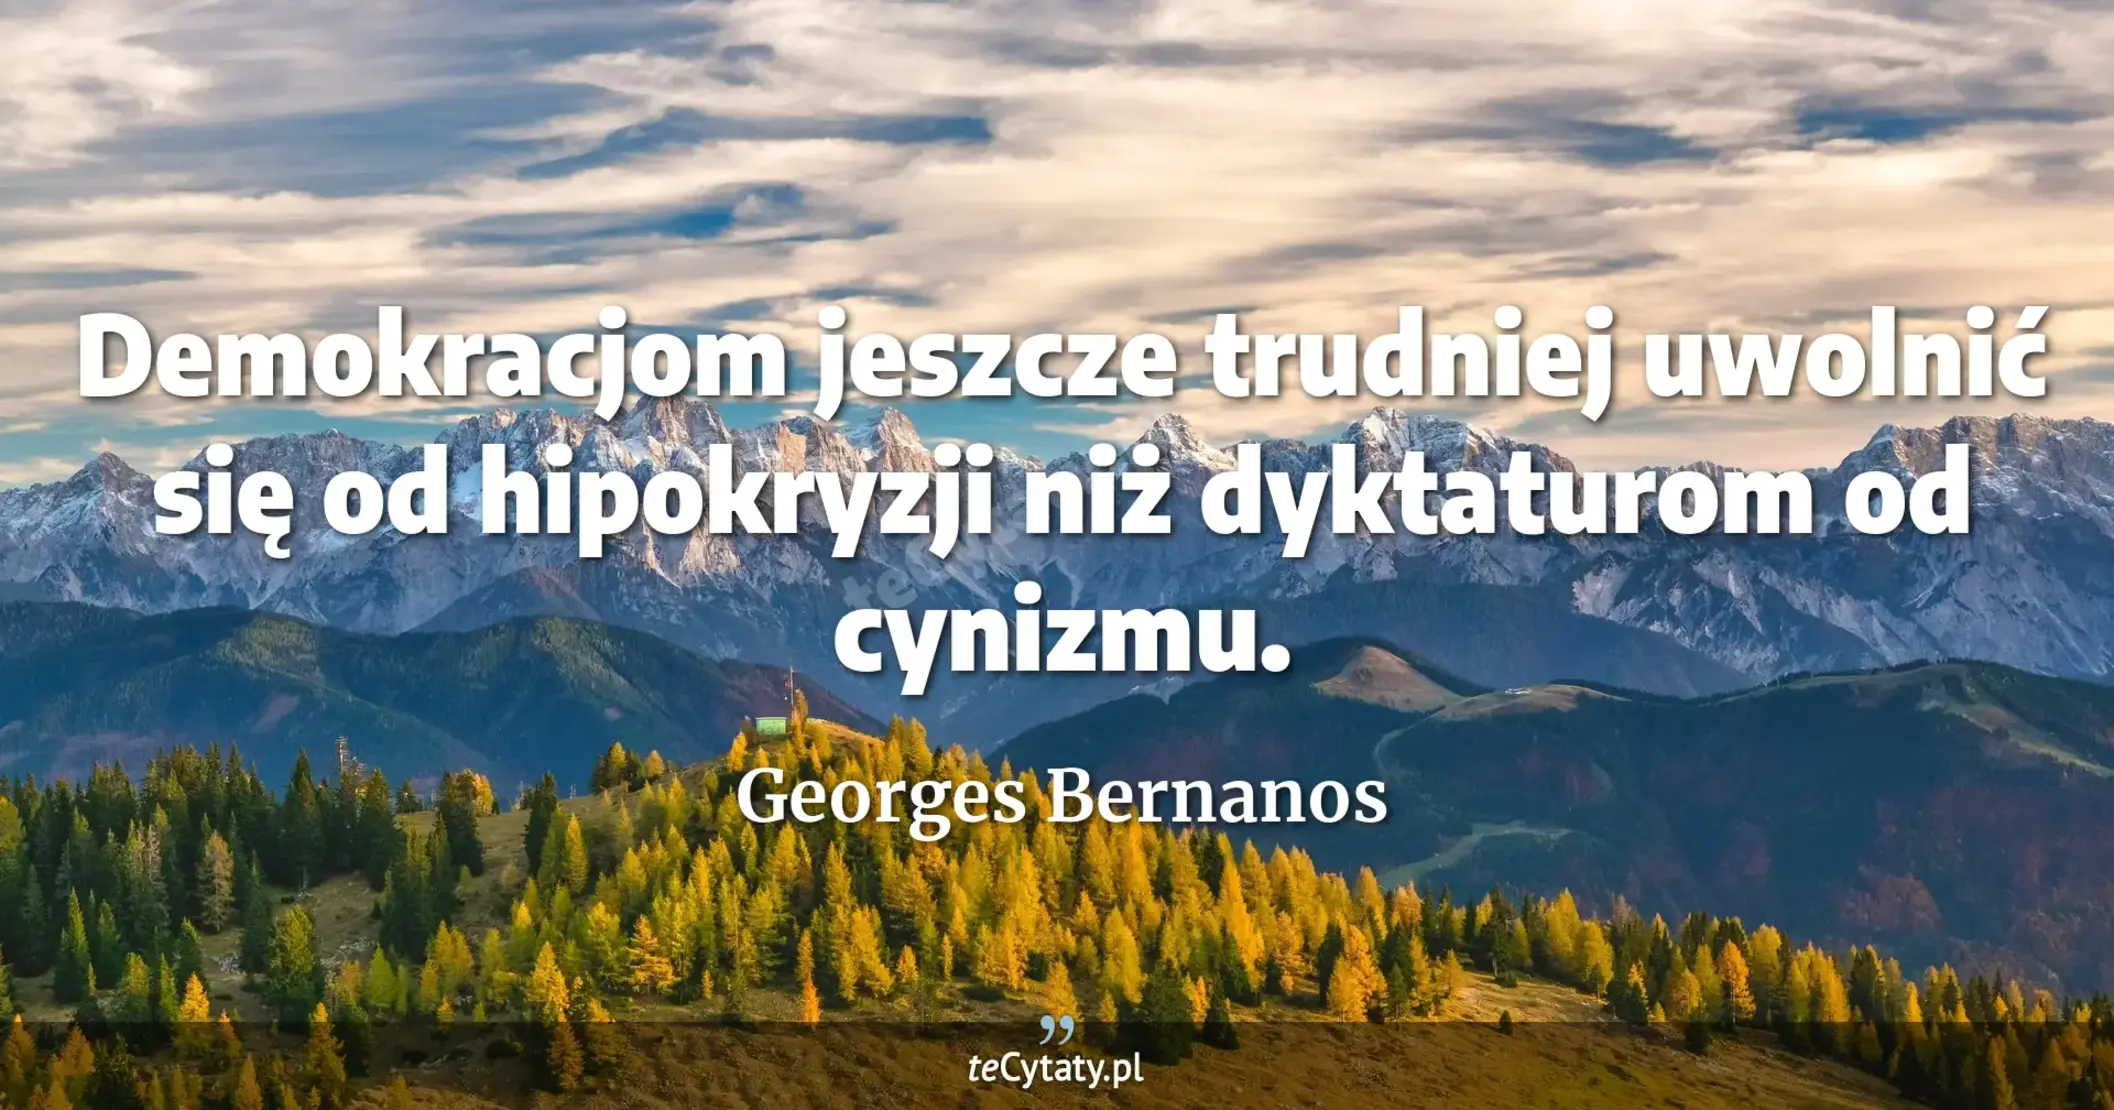 Demokracjom jeszcze trudniej uwolnić się od hipokryzji niż dyktaturom od cynizmu. - Georges Bernanos